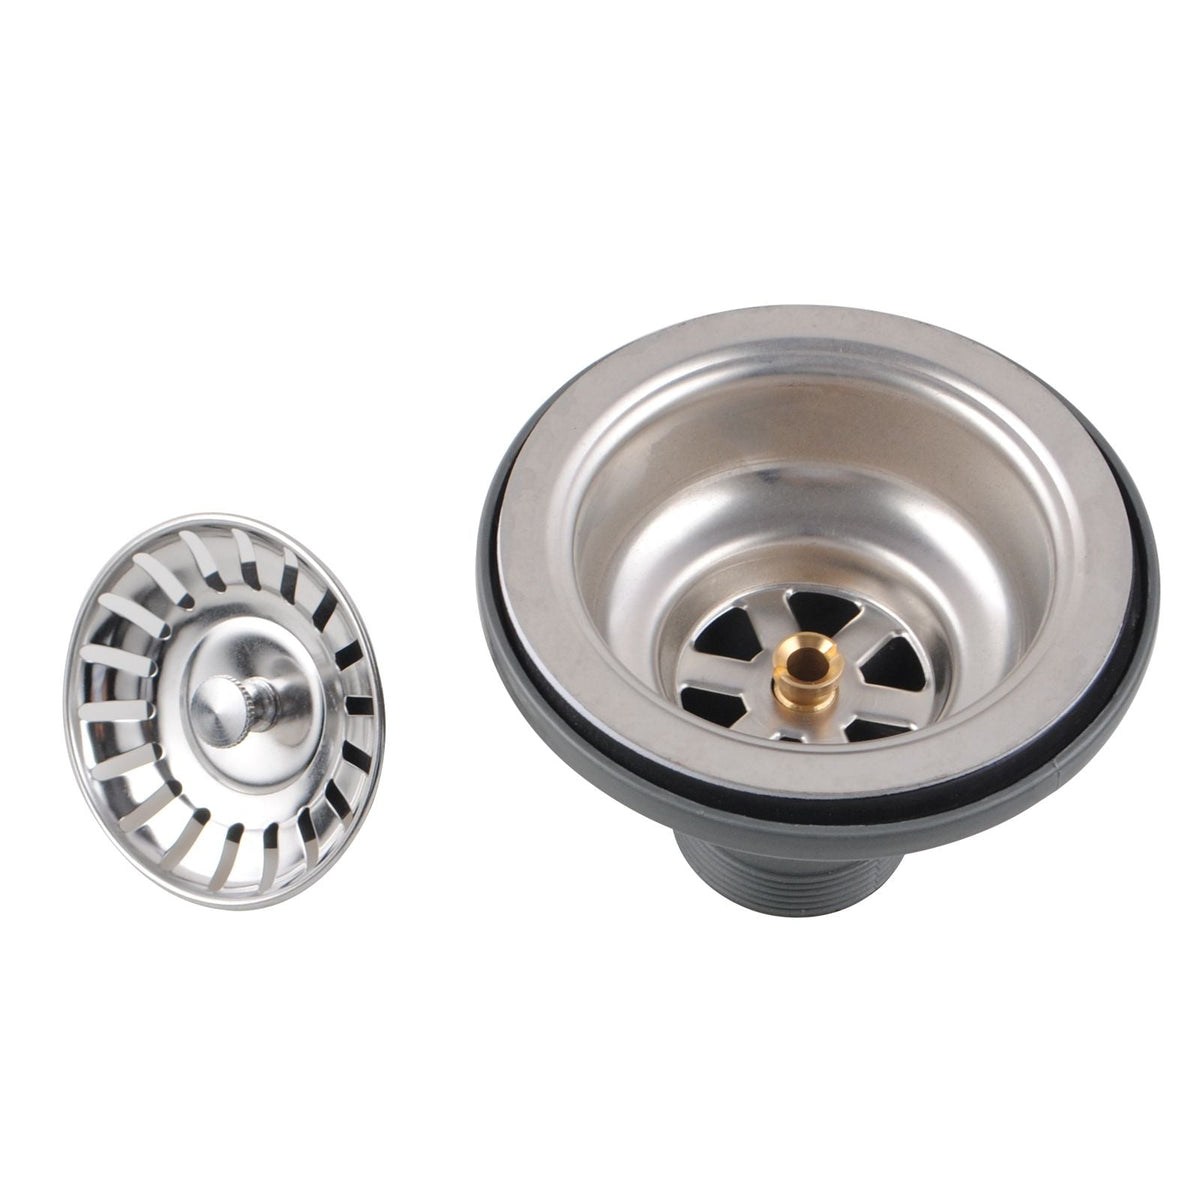 1.2mm 715x450x200mm Handmade Concrete Grey Round Corners Double Bowls Top / Undermount / Flush Mount Kitchen Sink